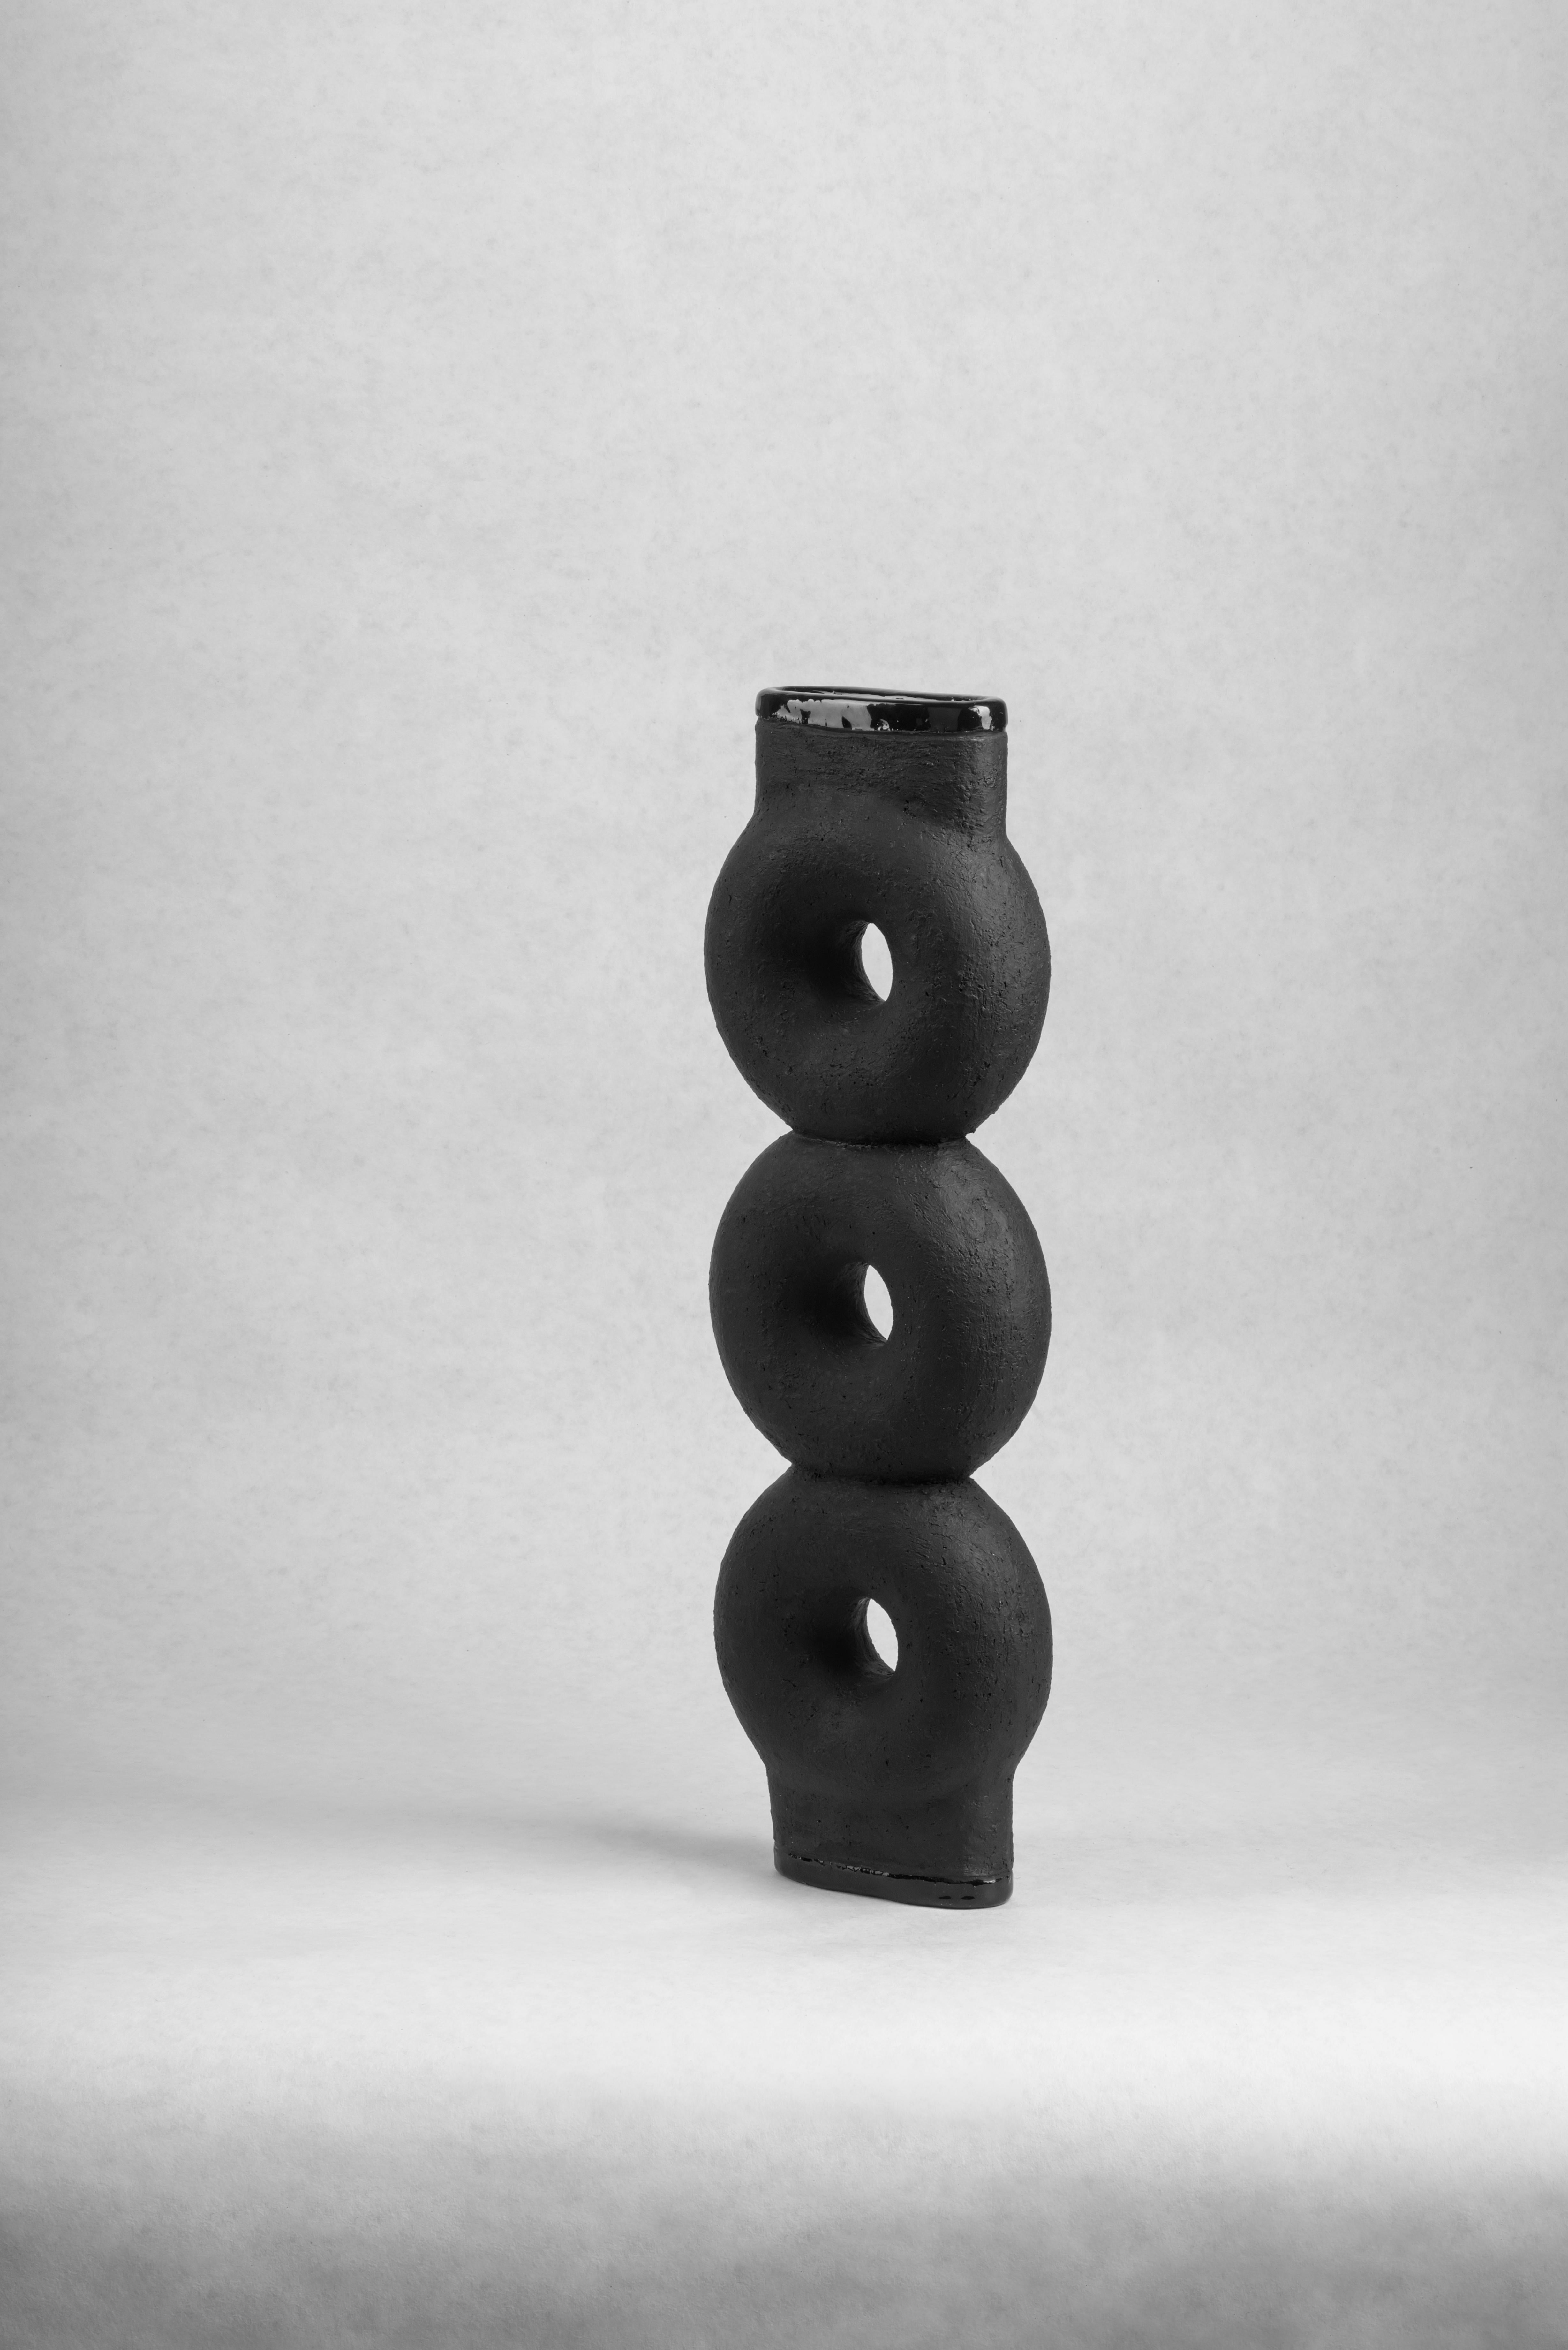 Paire de vases en céramique sculptée par FAINA
Design : Victoriya Yakusha
MATERIAL : Matériau : argile / céramique
Dimensions : 14 x 5 x H 43,5 cm


Le vase fait partie d'une série de 5 vases, l'ensemble des vases est composé de :

1. Vase sur trois